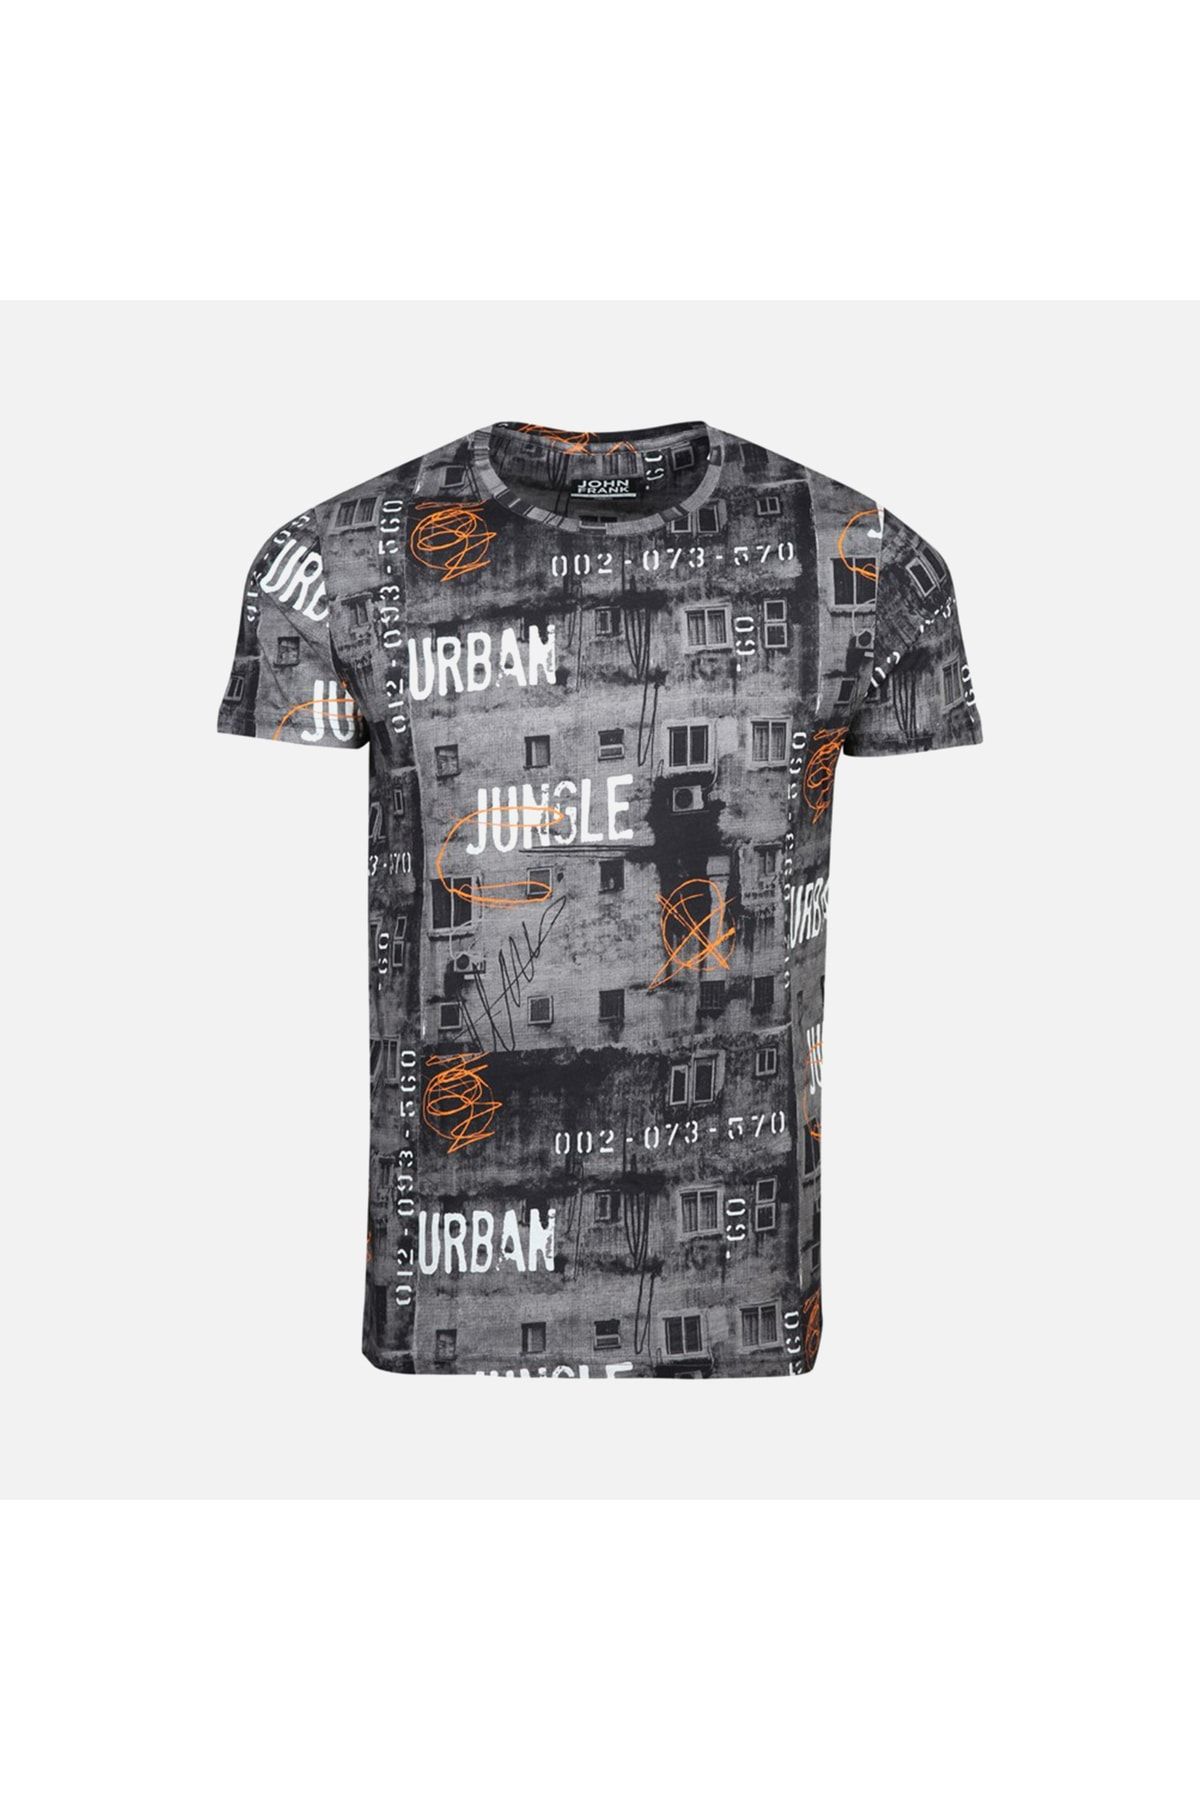 John Frank Urban Erkek Dijital Baskılı T-shirt